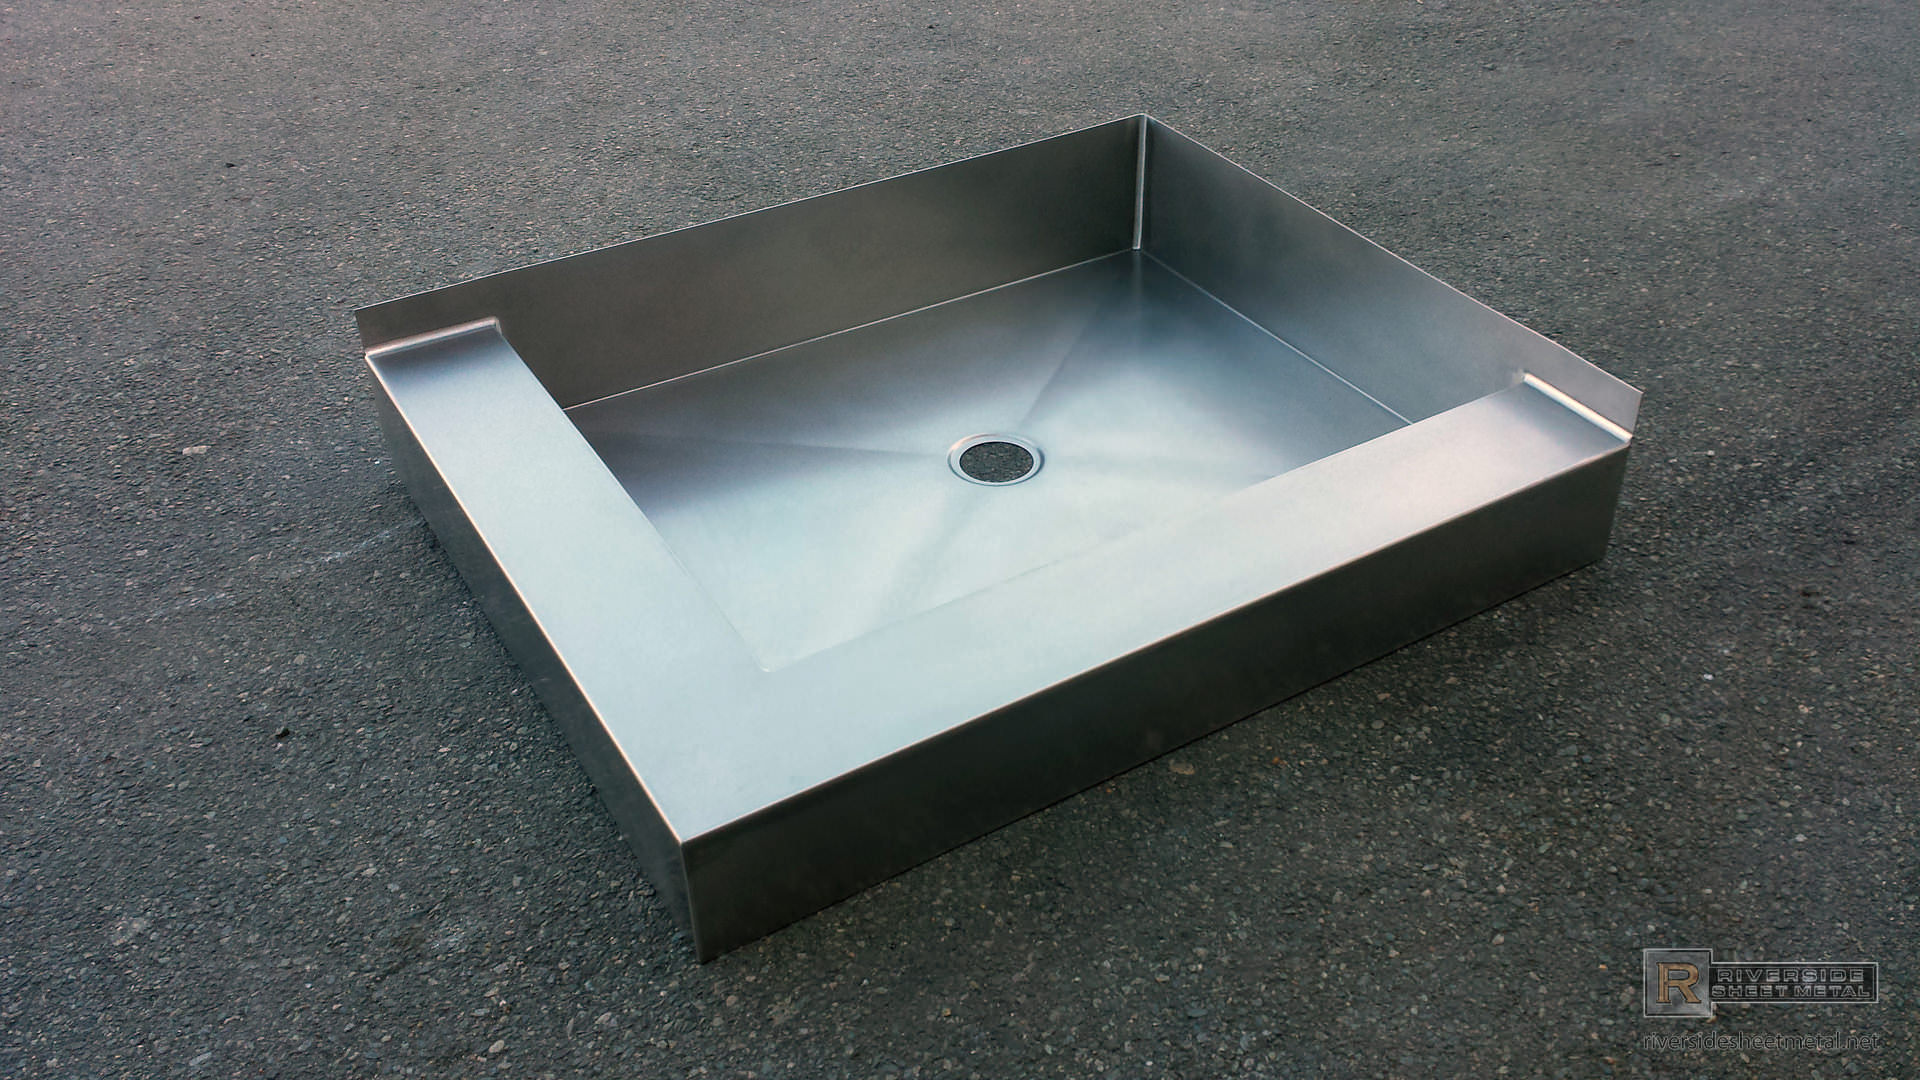 Stainless steel shower floor base (shower pan)